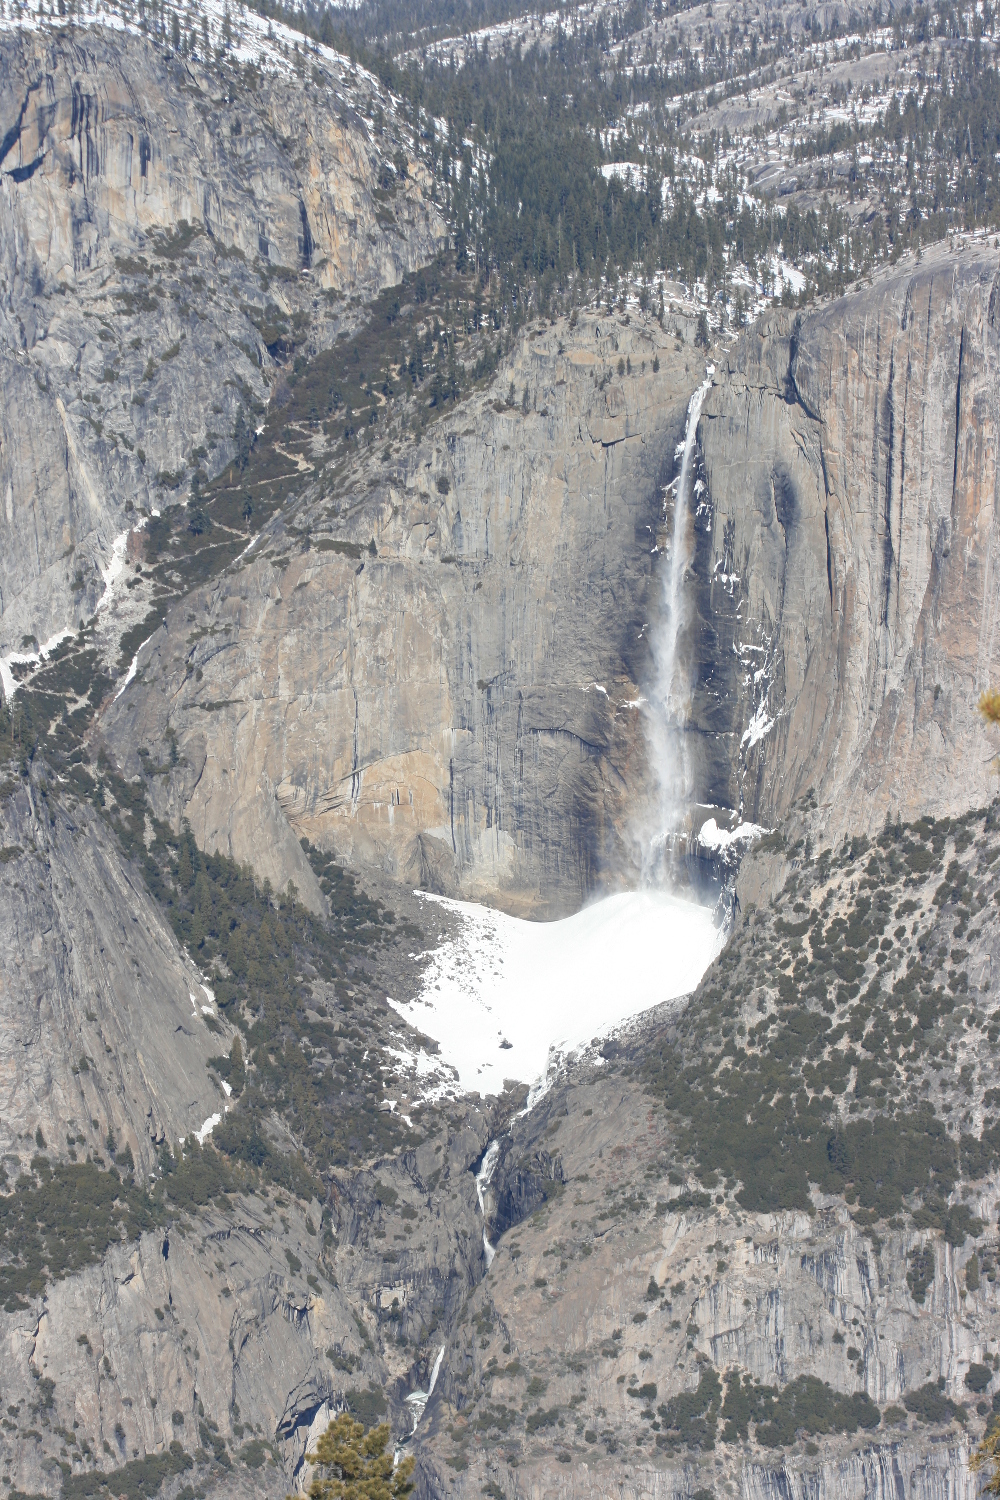 Yosemite Falls from Sentinel Dome, Feb 2013.